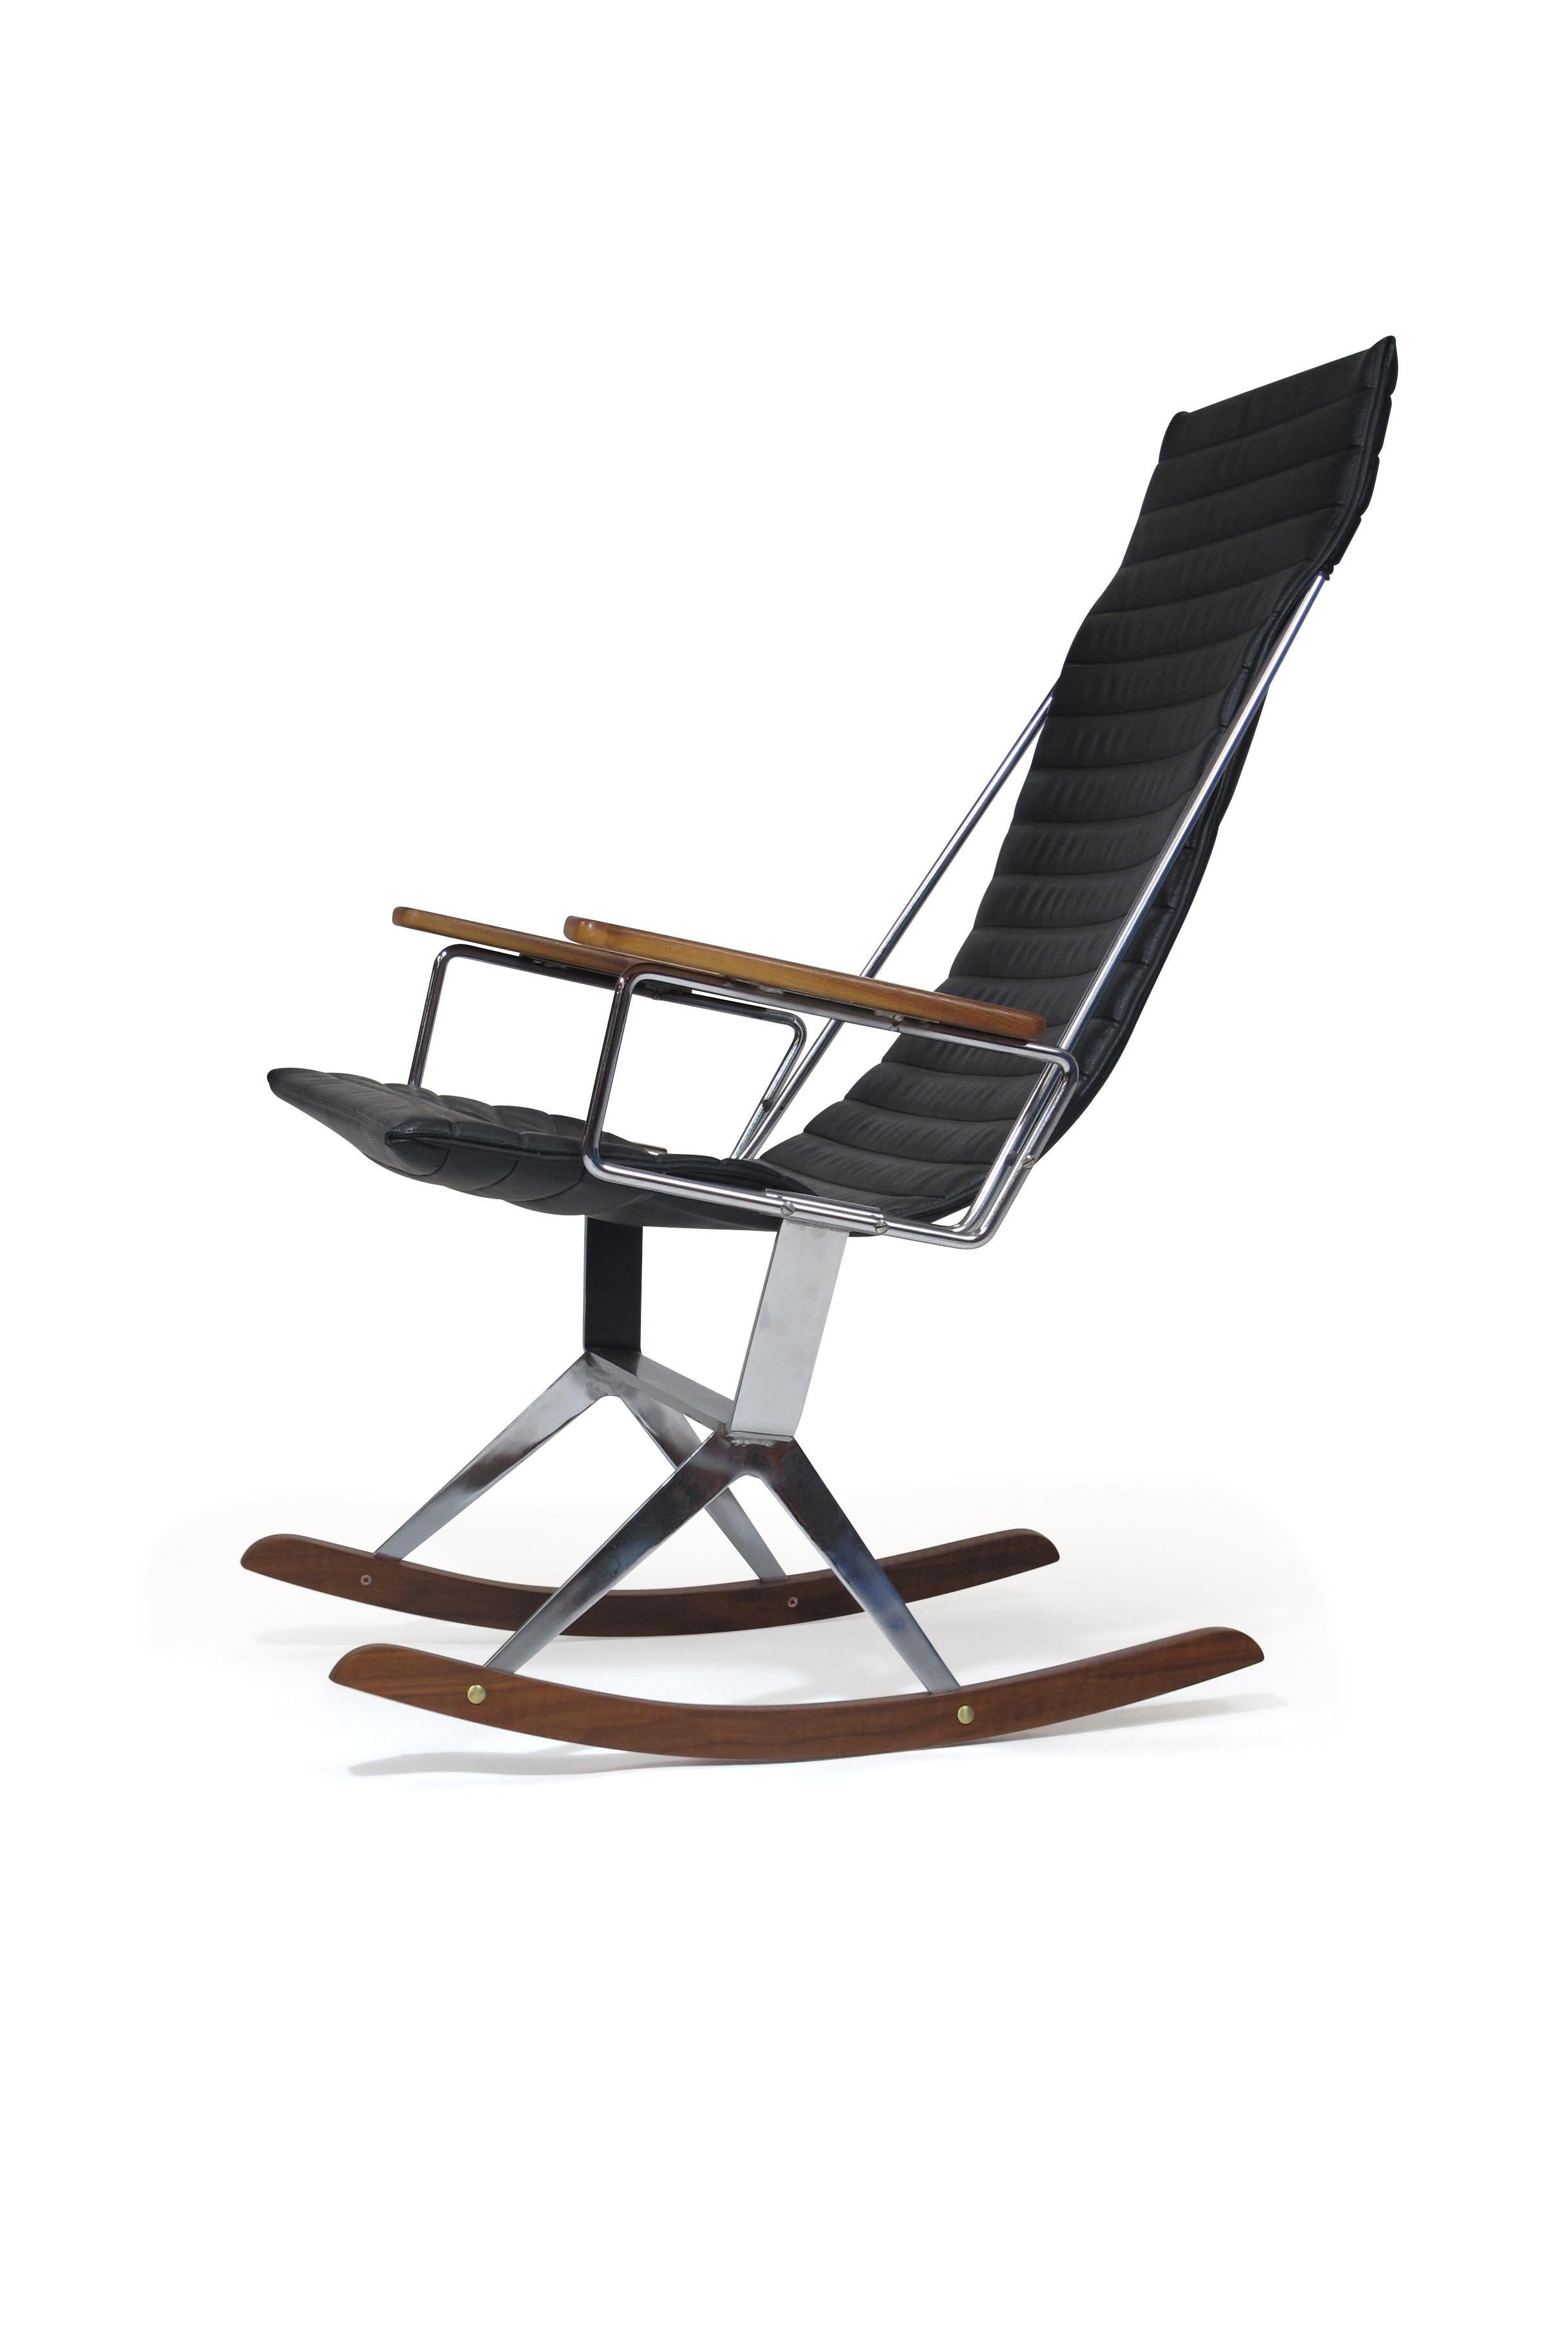 Schaukelstuhl, entworfen von dem kalifornischen Designer Gerald McCabe für Brown Saltman, um 1960. Der Sling-Sitz ist mit dem originalen schwarzen Vinyl gepolstert, das auf ein rundes Stahlgestell mit Walnuss-Armen passt. Der Flachstahlrahmen ist